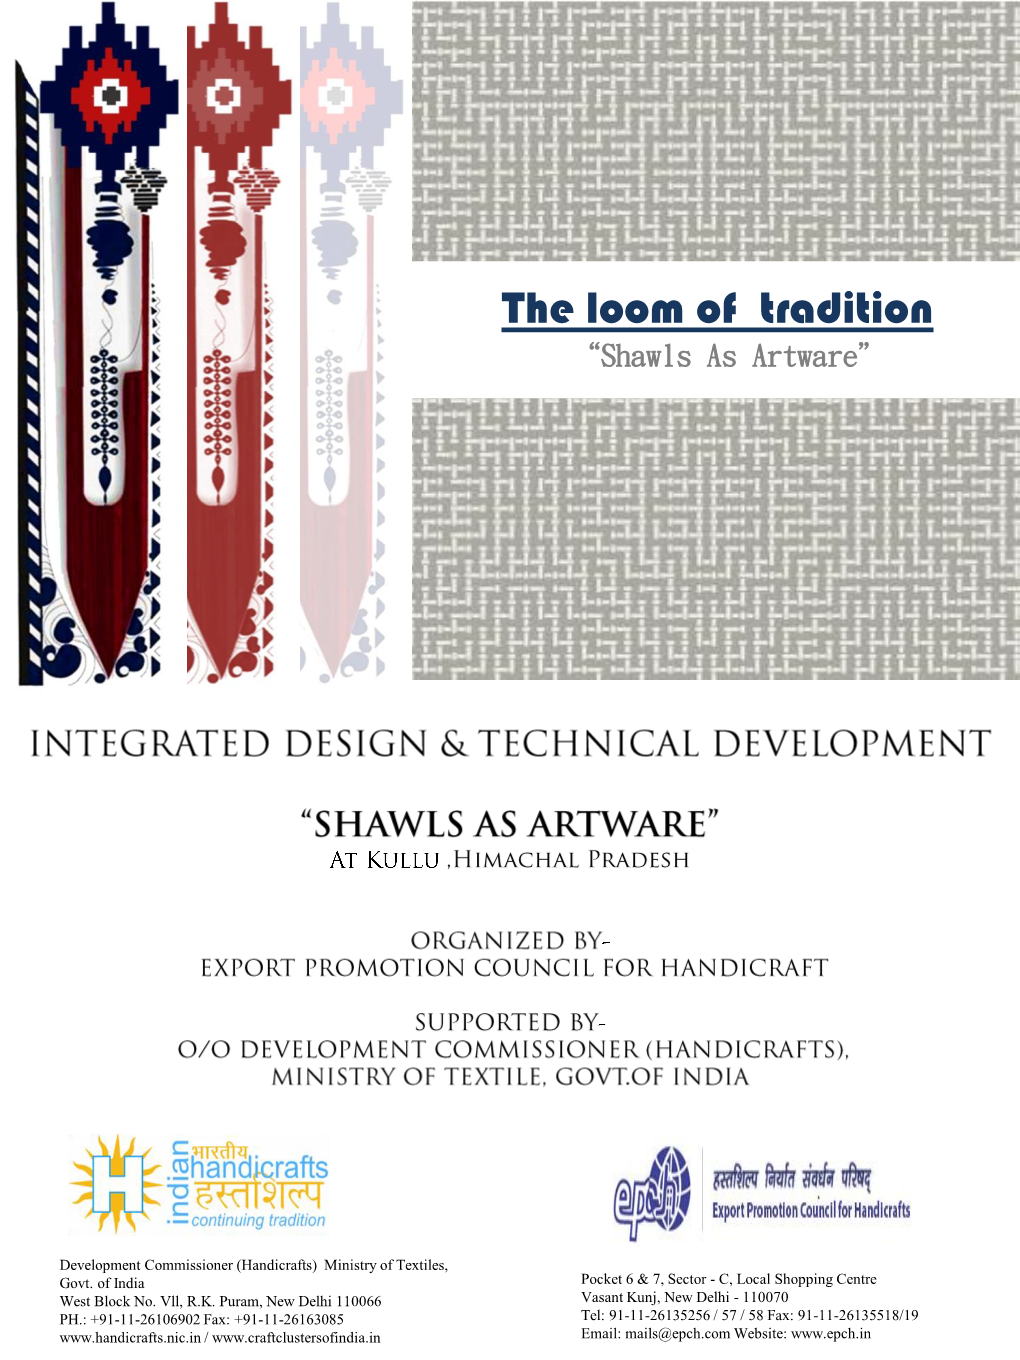 For Shawl As Artware at Kullu,Himachal Pradesh